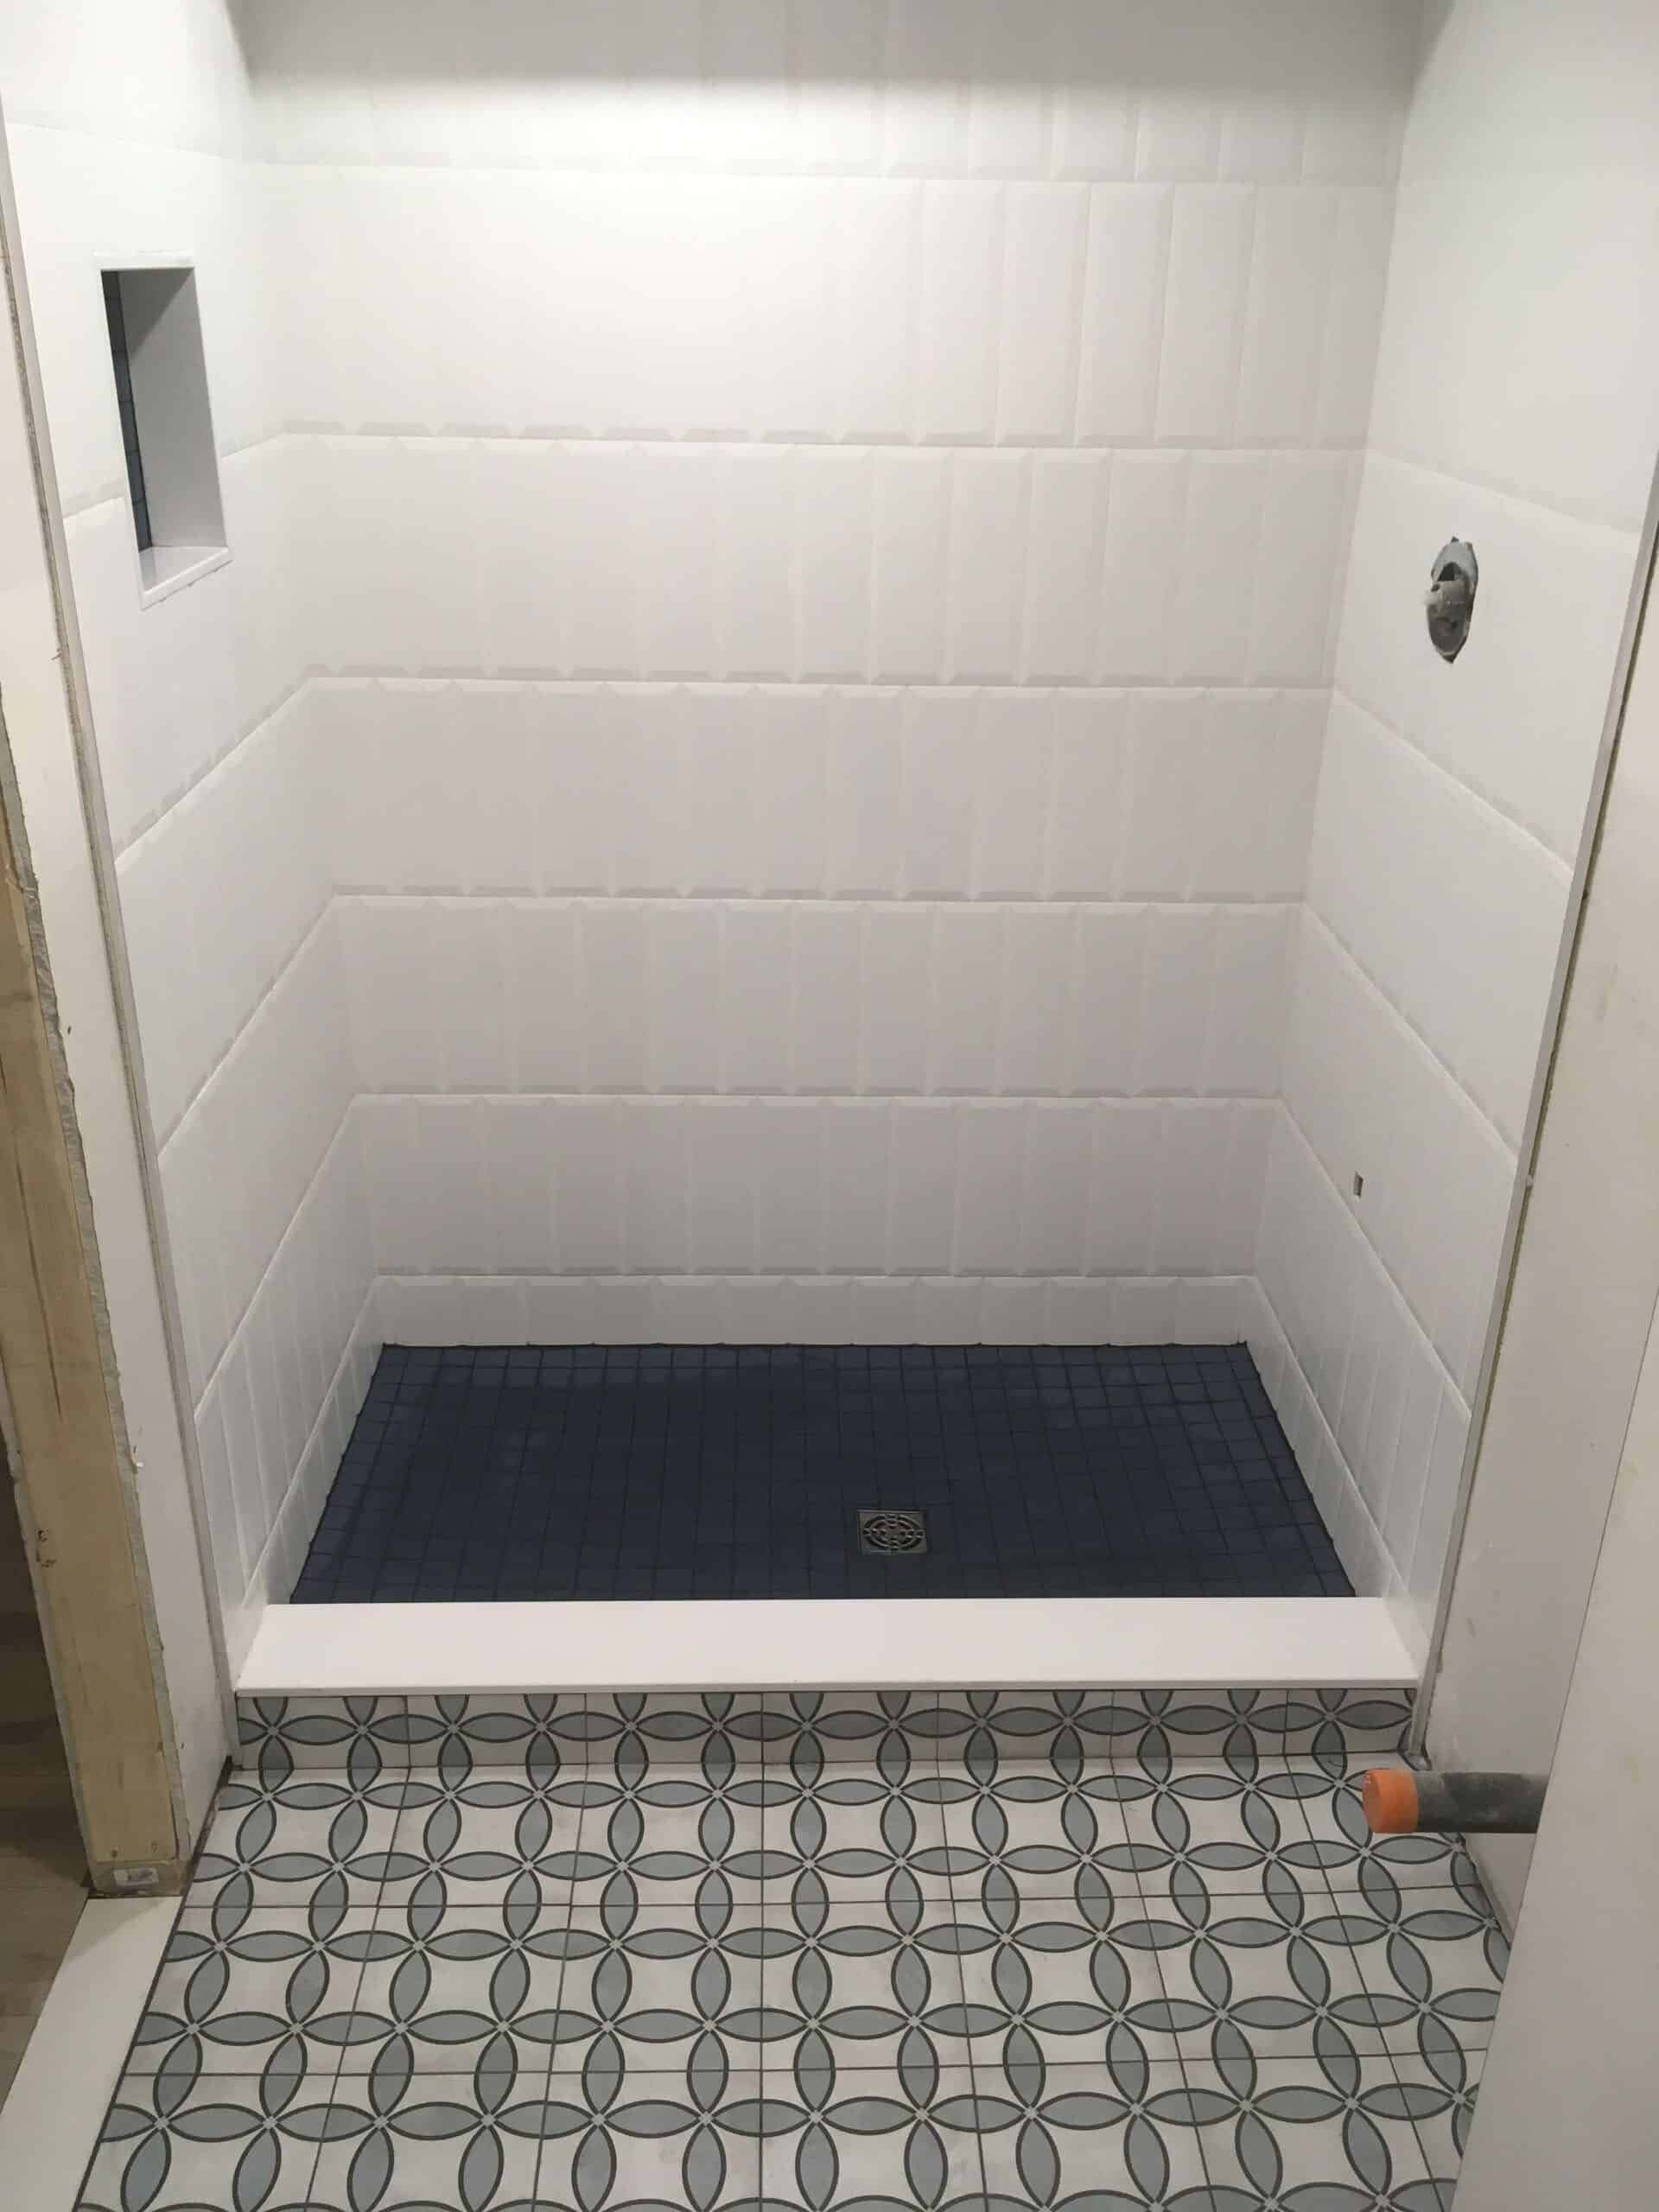 Shower Floor Tile, Tiles For Shower Floor Ideas